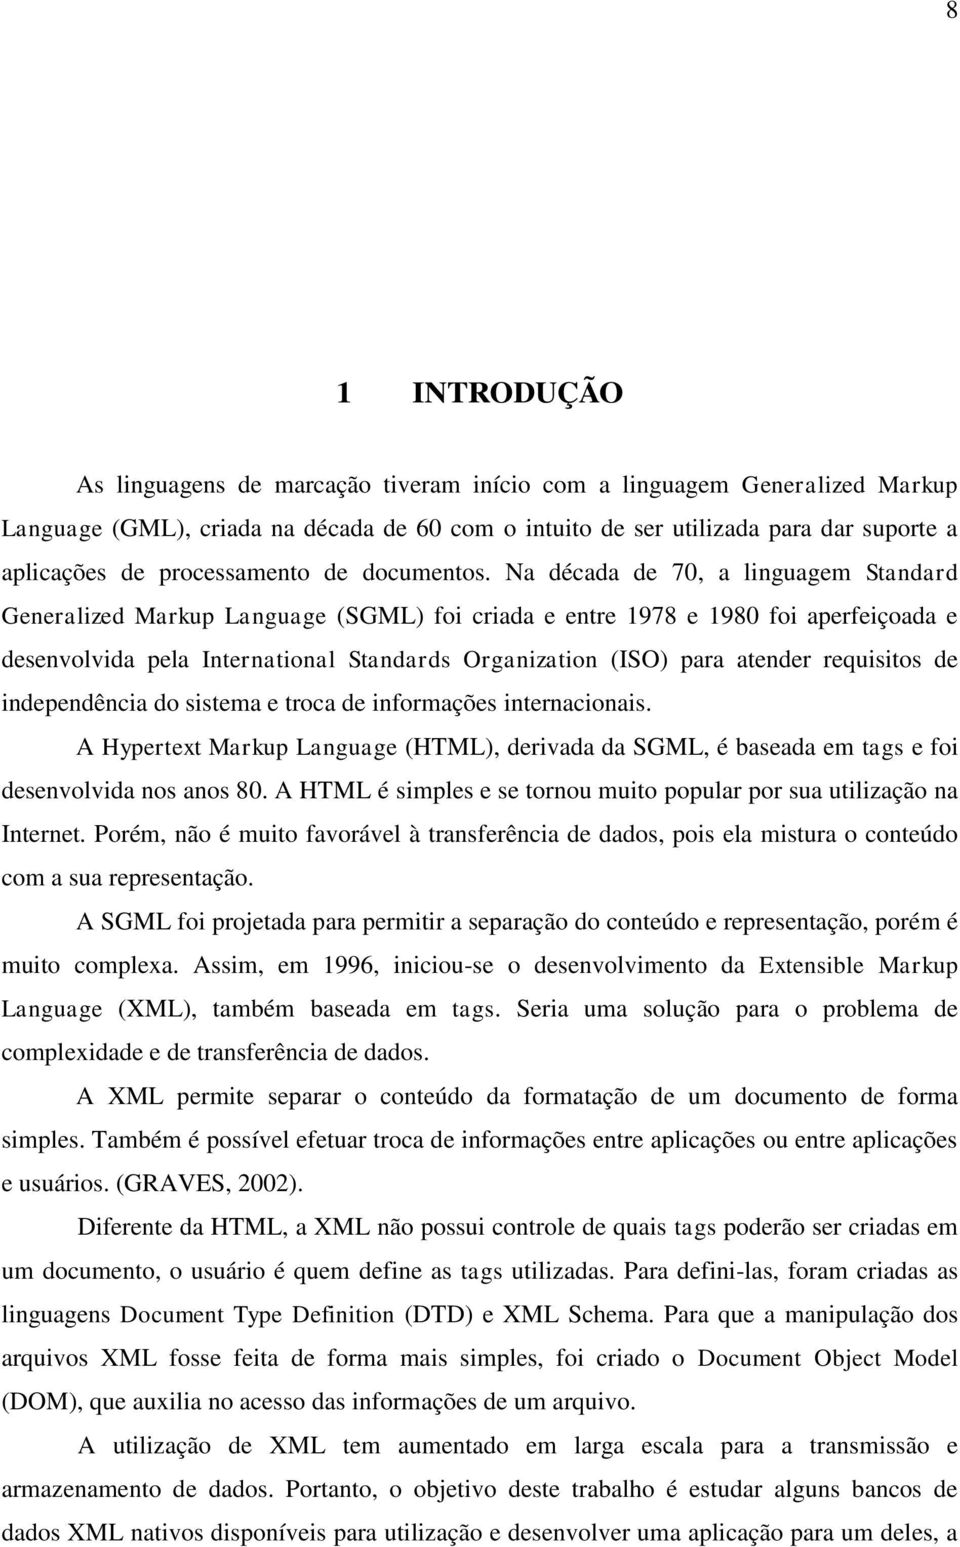 Na década de 70, a linguagem Standard Generalized Markup Language (SGML) foi criada e entre 1978 e 1980 foi aperfeiçoada e desenvolvida pela International Standards Organization (ISO) para atender